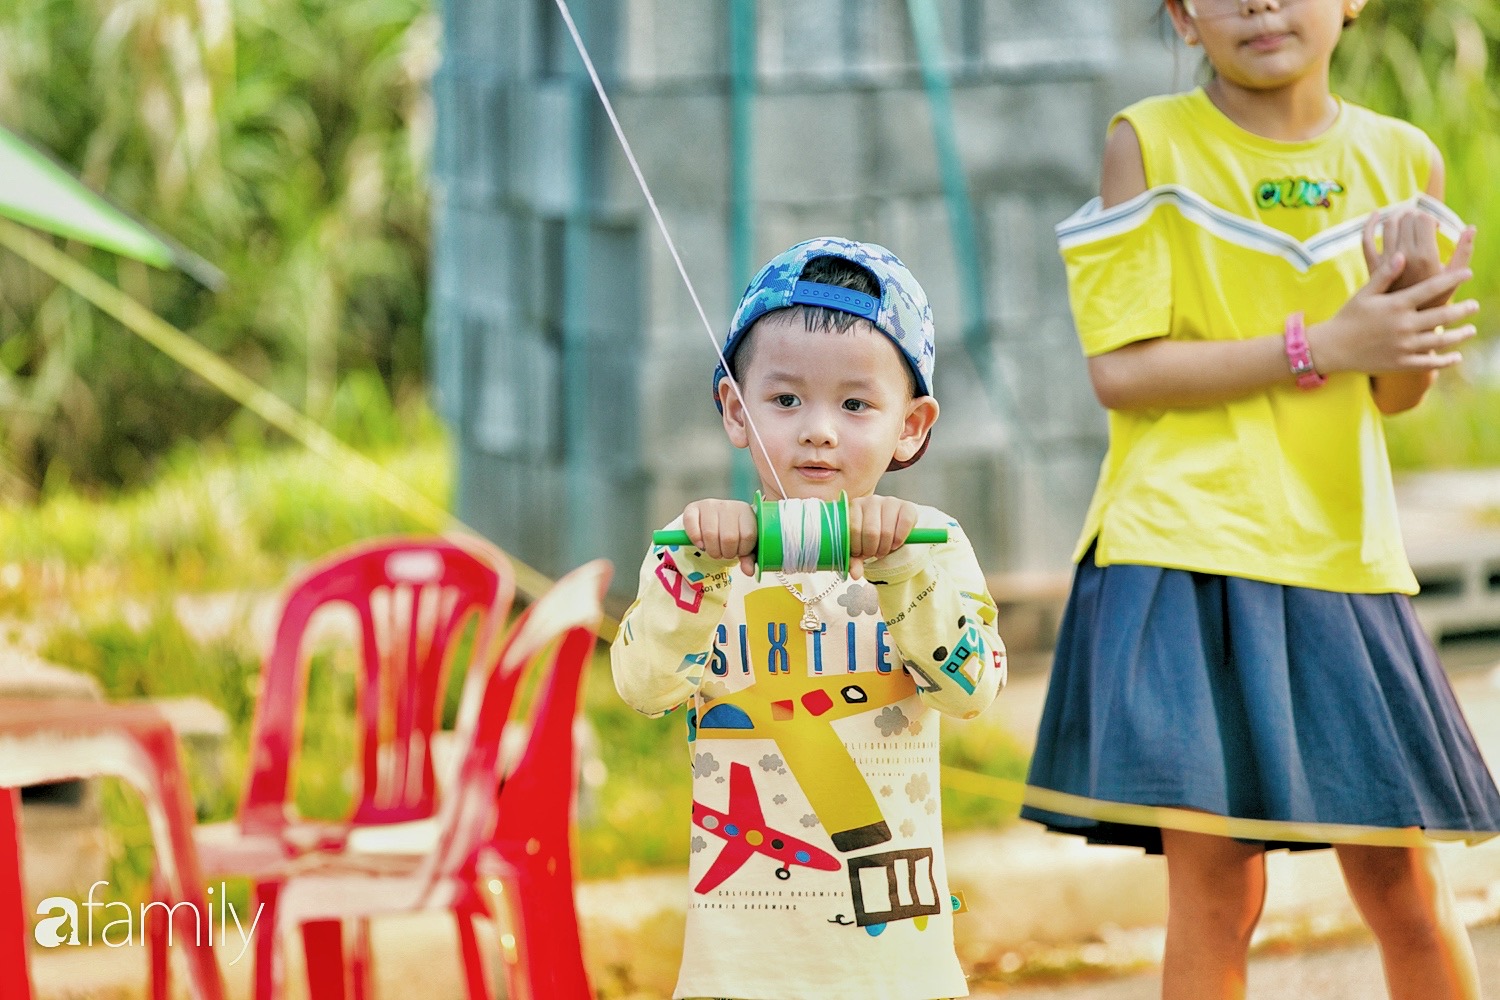 Chùm ảnh: Cánh đồng diều bay rợp trời hot nhất tại Sài Gòn, bất kể già trẻ, lớn bé ai cũng hăng say như trở về tuổi thơ - Ảnh 13.